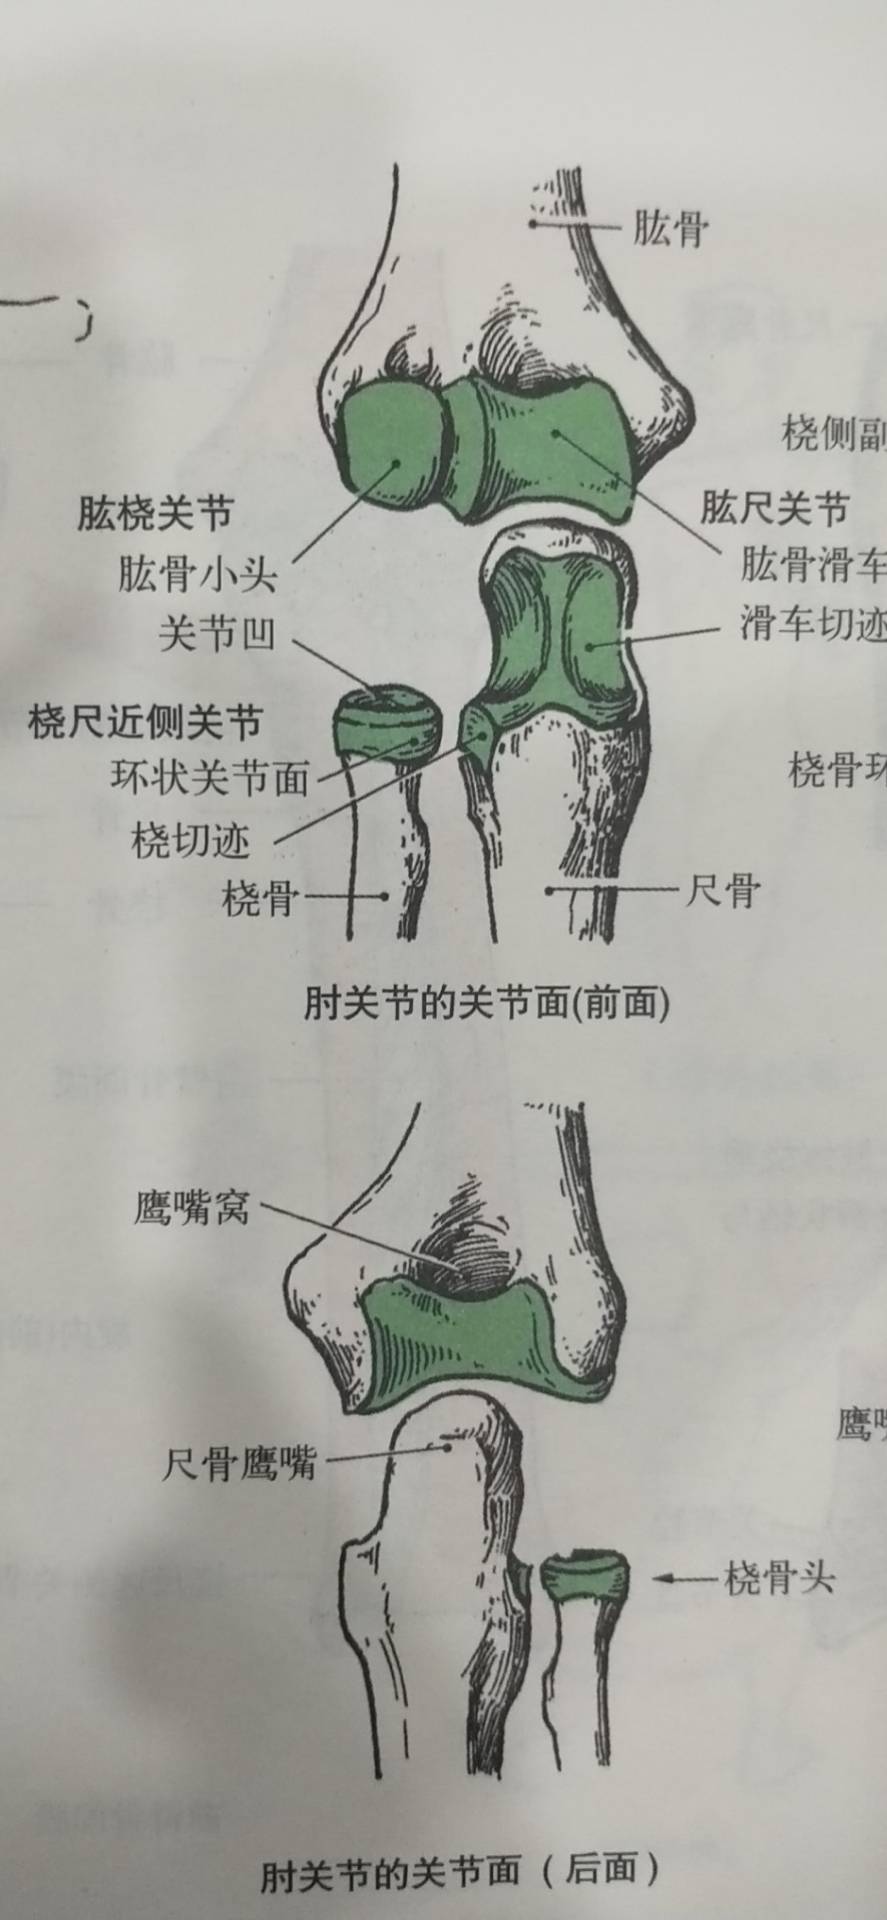 肱尺关节:由肱骨的"滑车"与尺骨的"滑车切迹"构成,属于滑车关节,能做